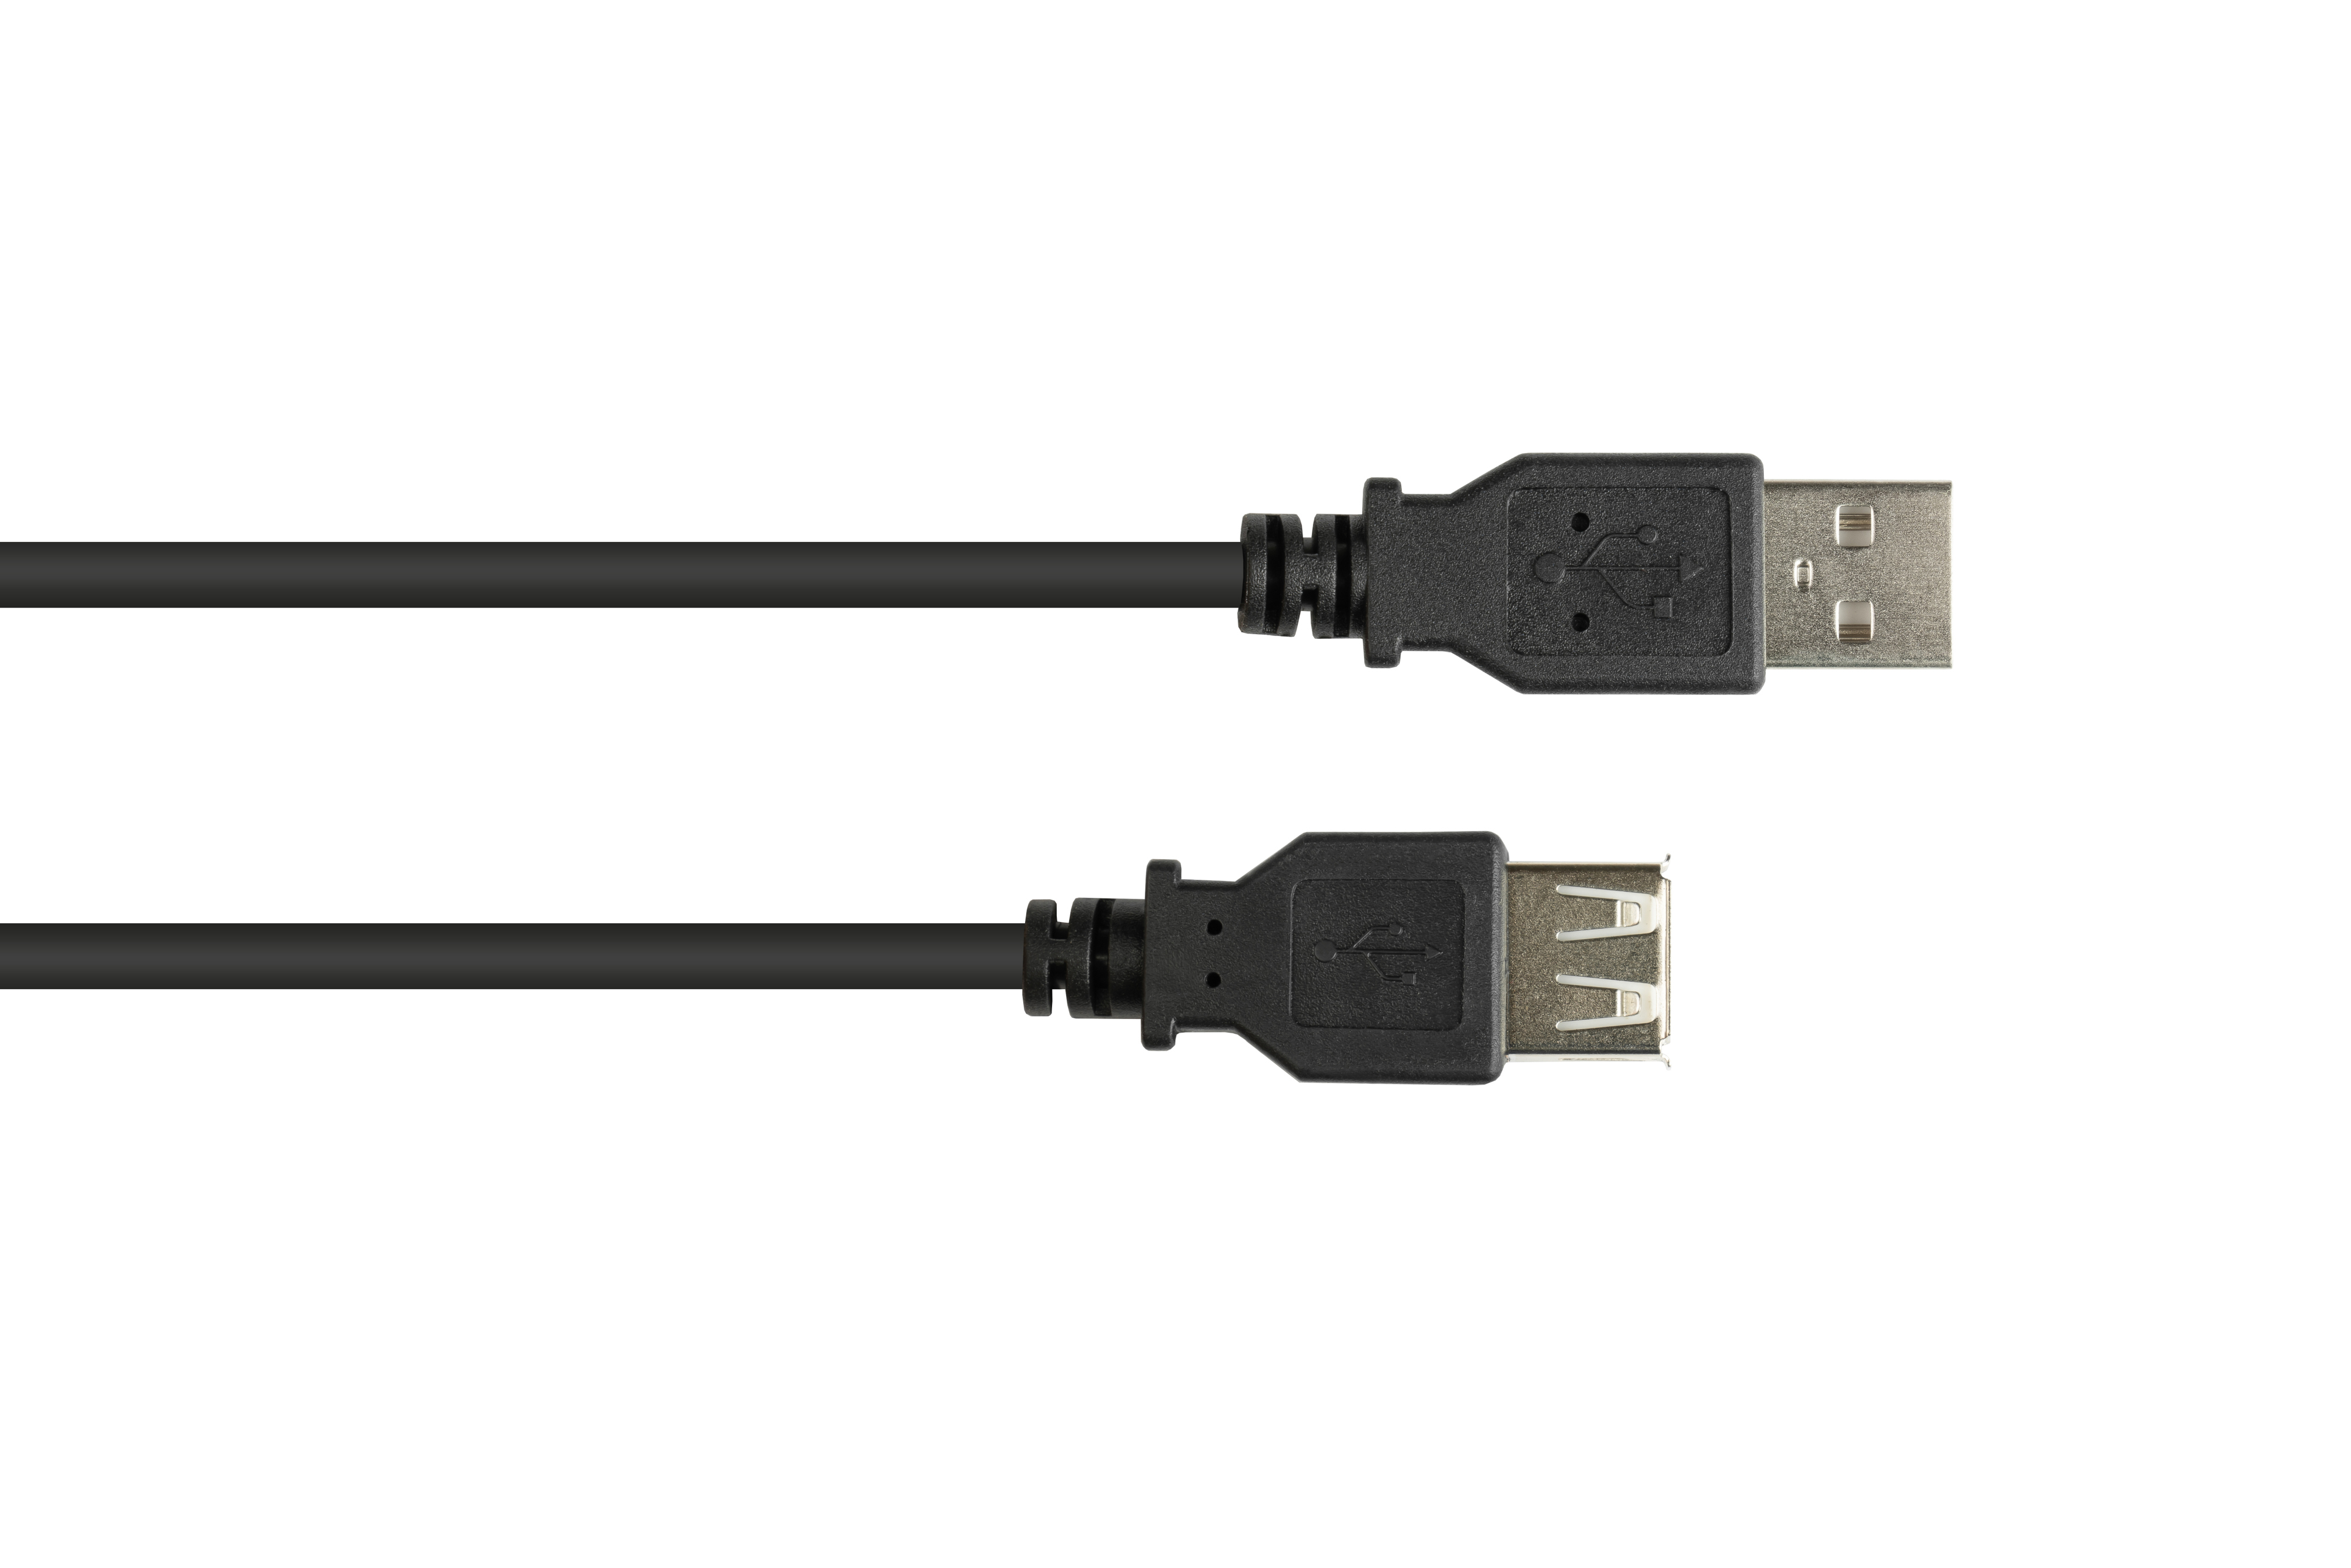 GOOD CONNECTIONS an Verlängerungskabel Stecker A 2.0 A, USB Buchse schwarz